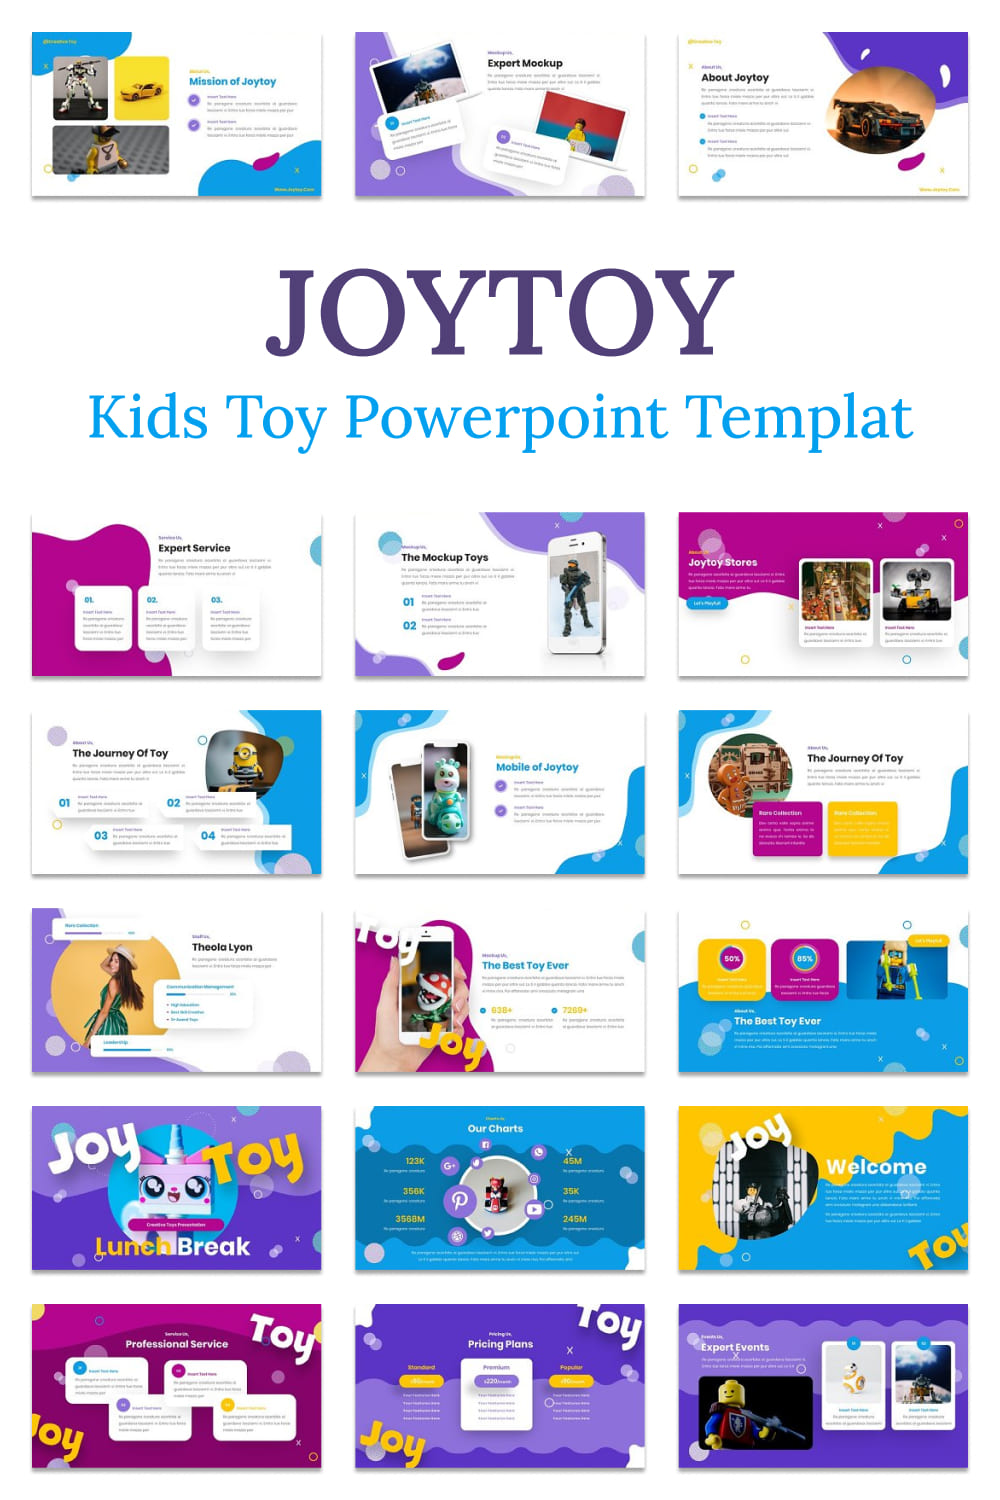 joytoy kids toy powerpoint templat 02 784